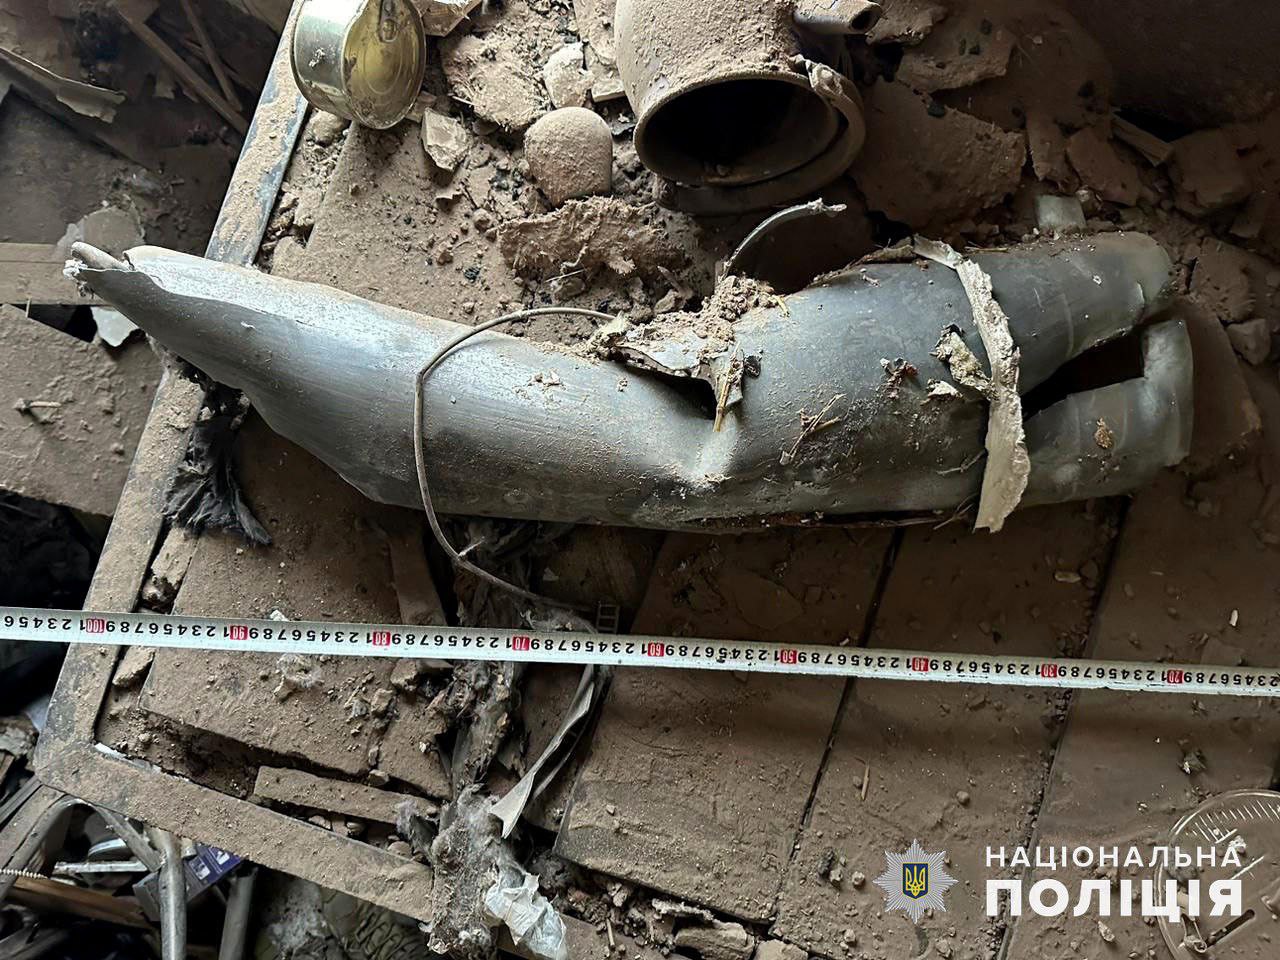 Остатки снаряда, который запустили на головы гражданских жителей Донетчины